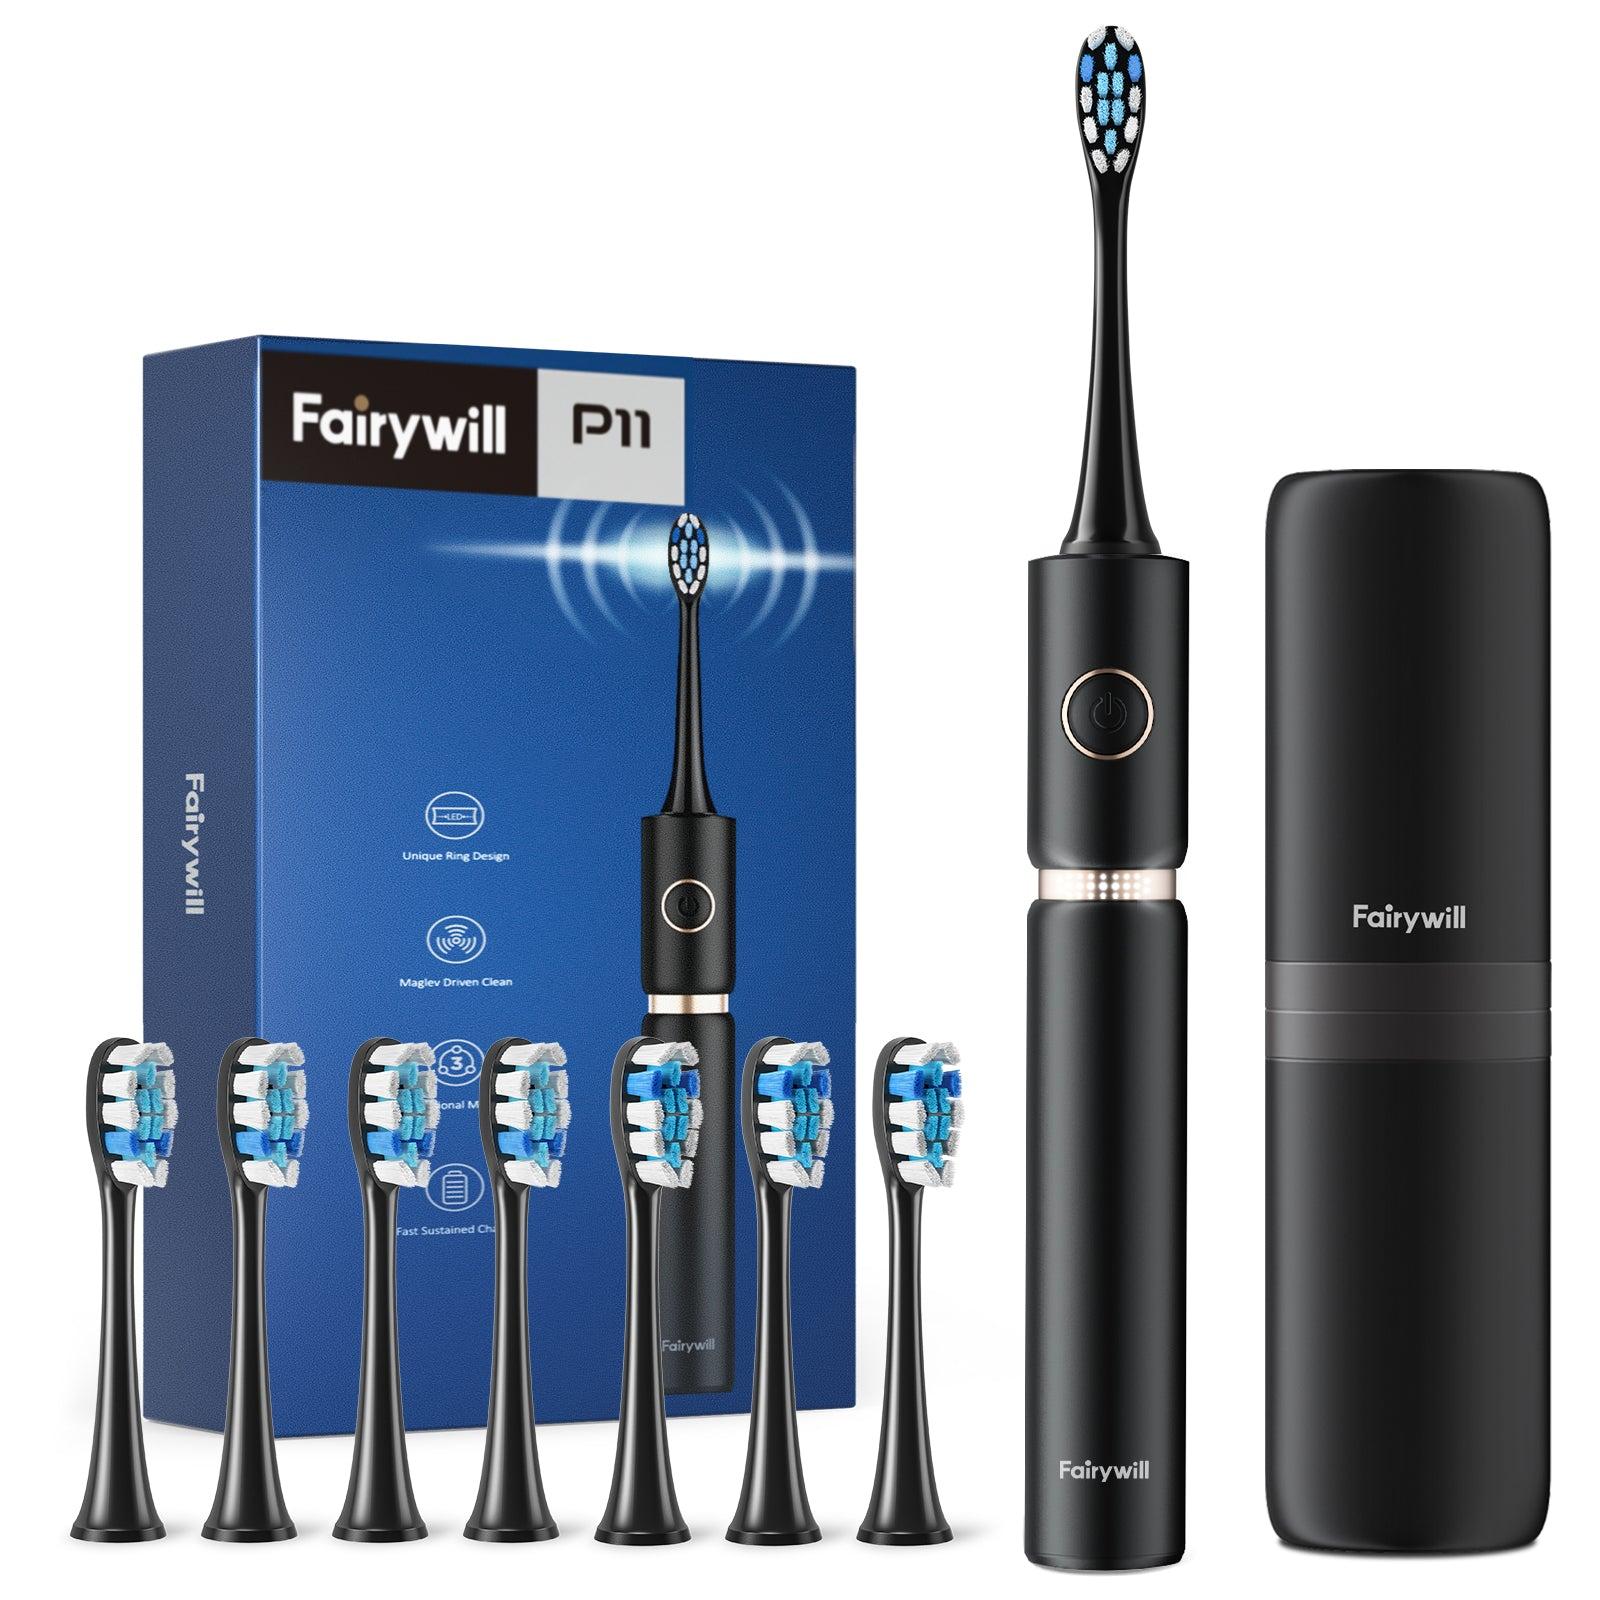 فرشاة اسنان كهربائية مقاومة للماء فيري ويل 8 رؤوس Fairywill P11 Ultrasonic Electric Toothbrush